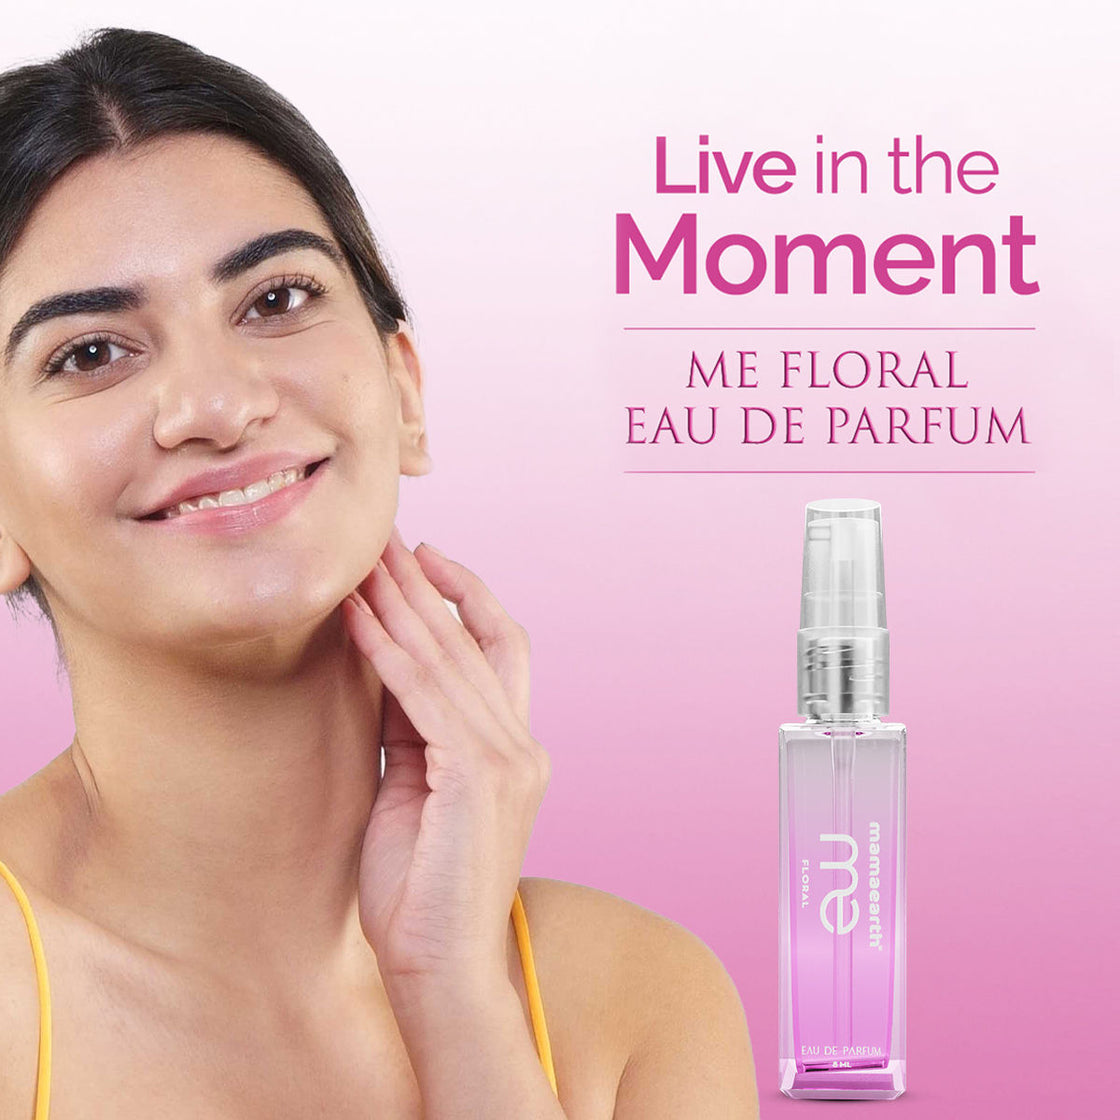 Mamaearth Me Floral Eau De Parfum - Live In The Moment-7